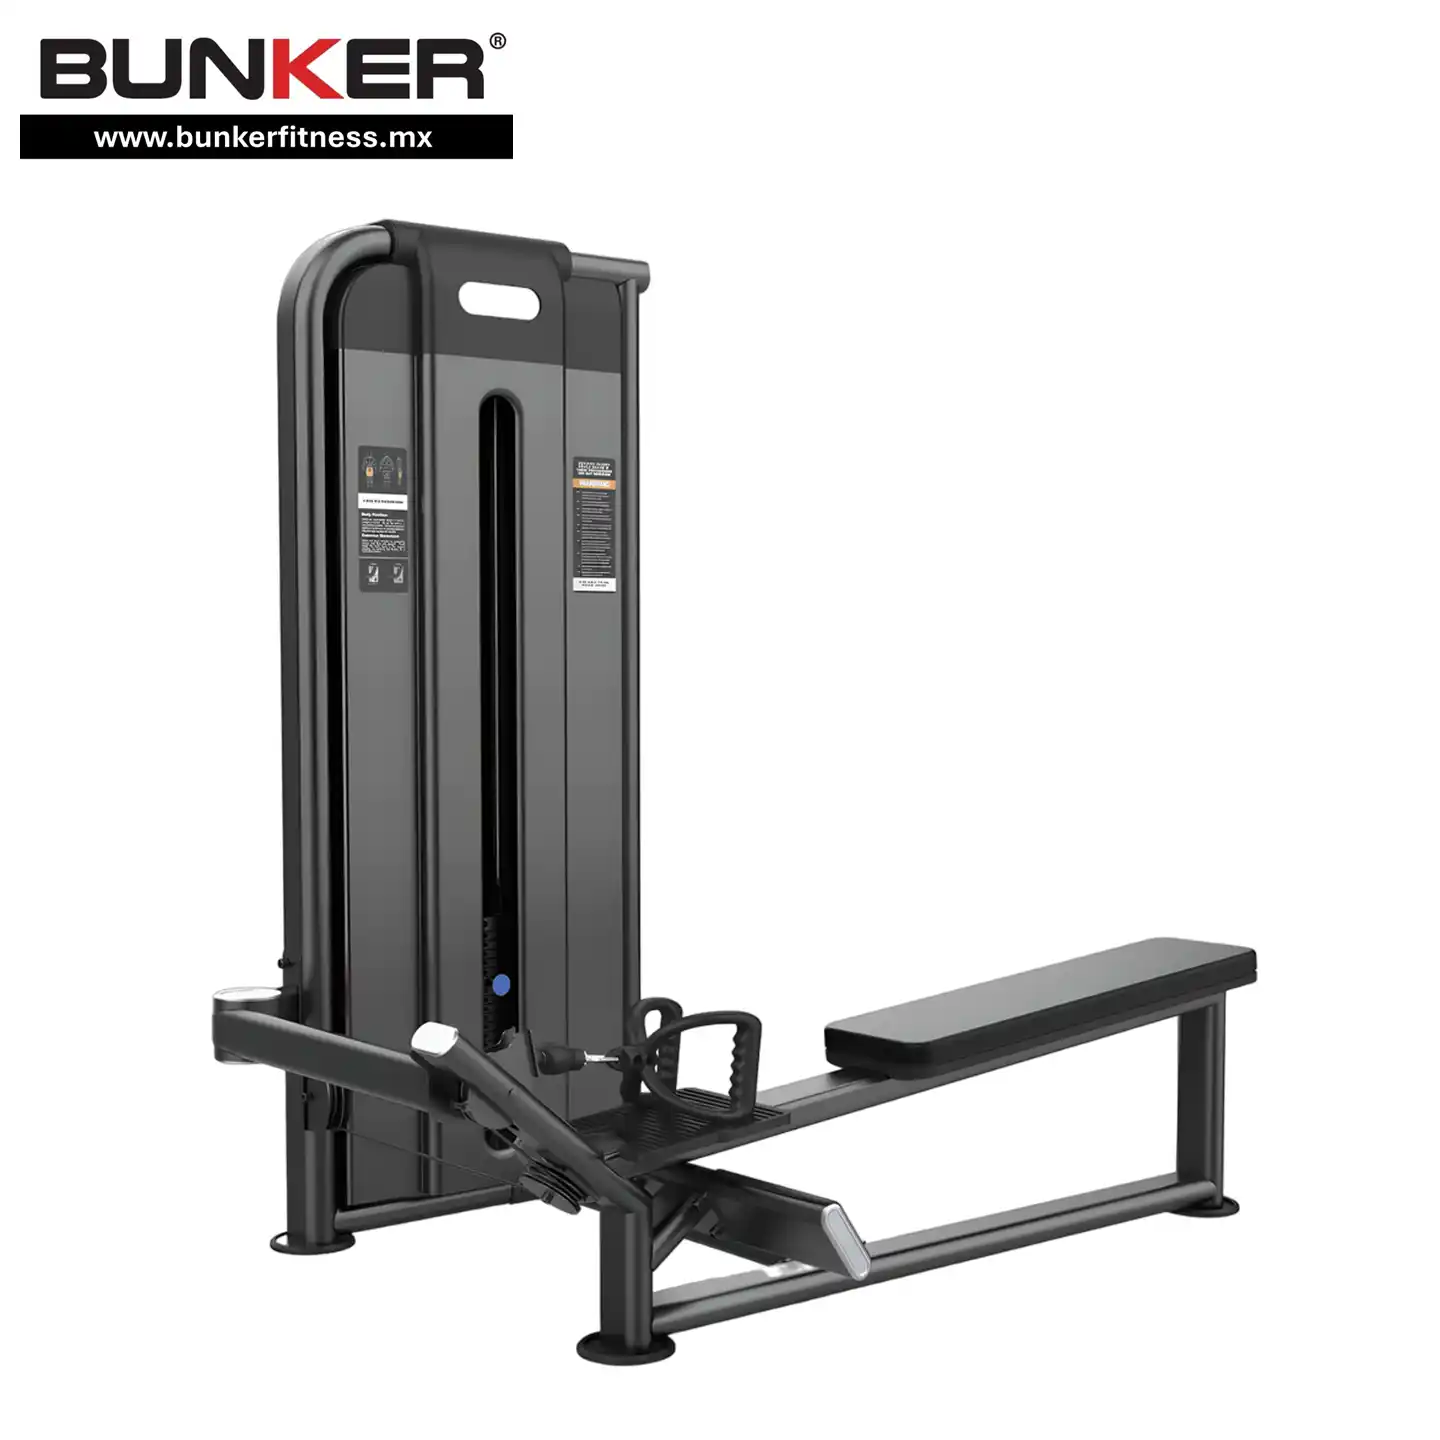 aparato de remo largo para espalda con peso integrado bunker gym bunker fitness